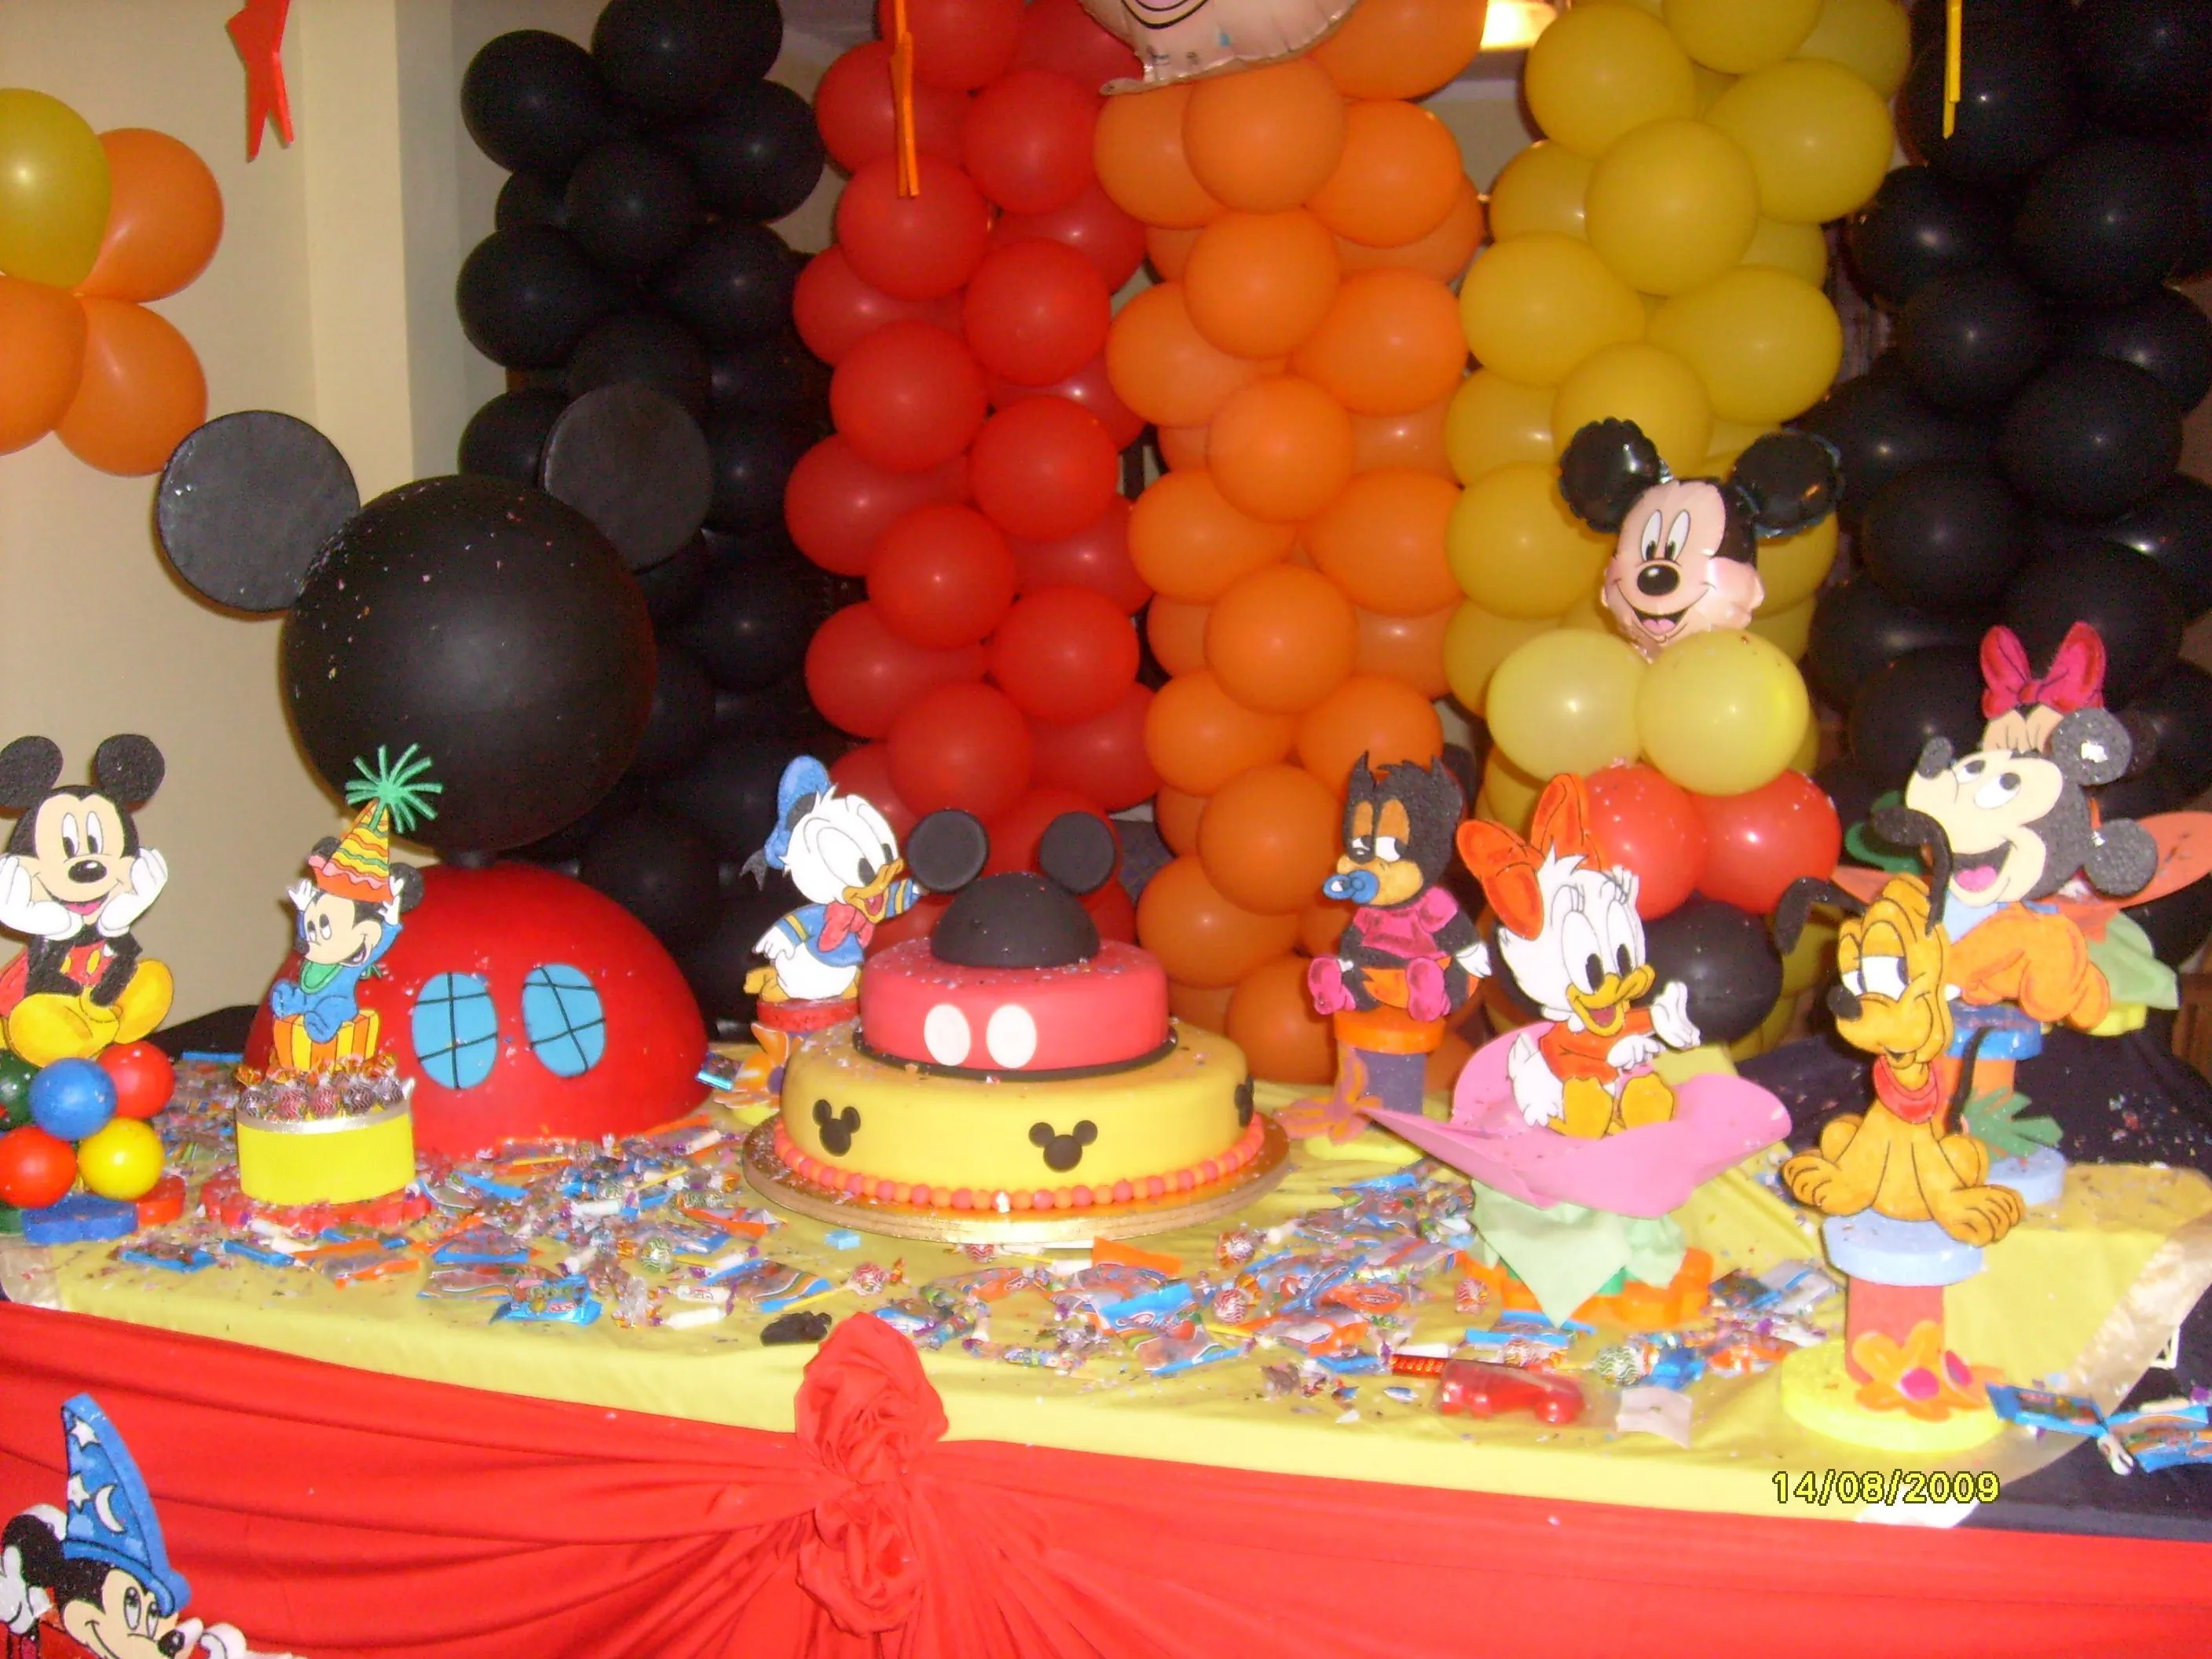 decoración fiesta mickey mouse - Buscar con Google | Cumpleaños ...